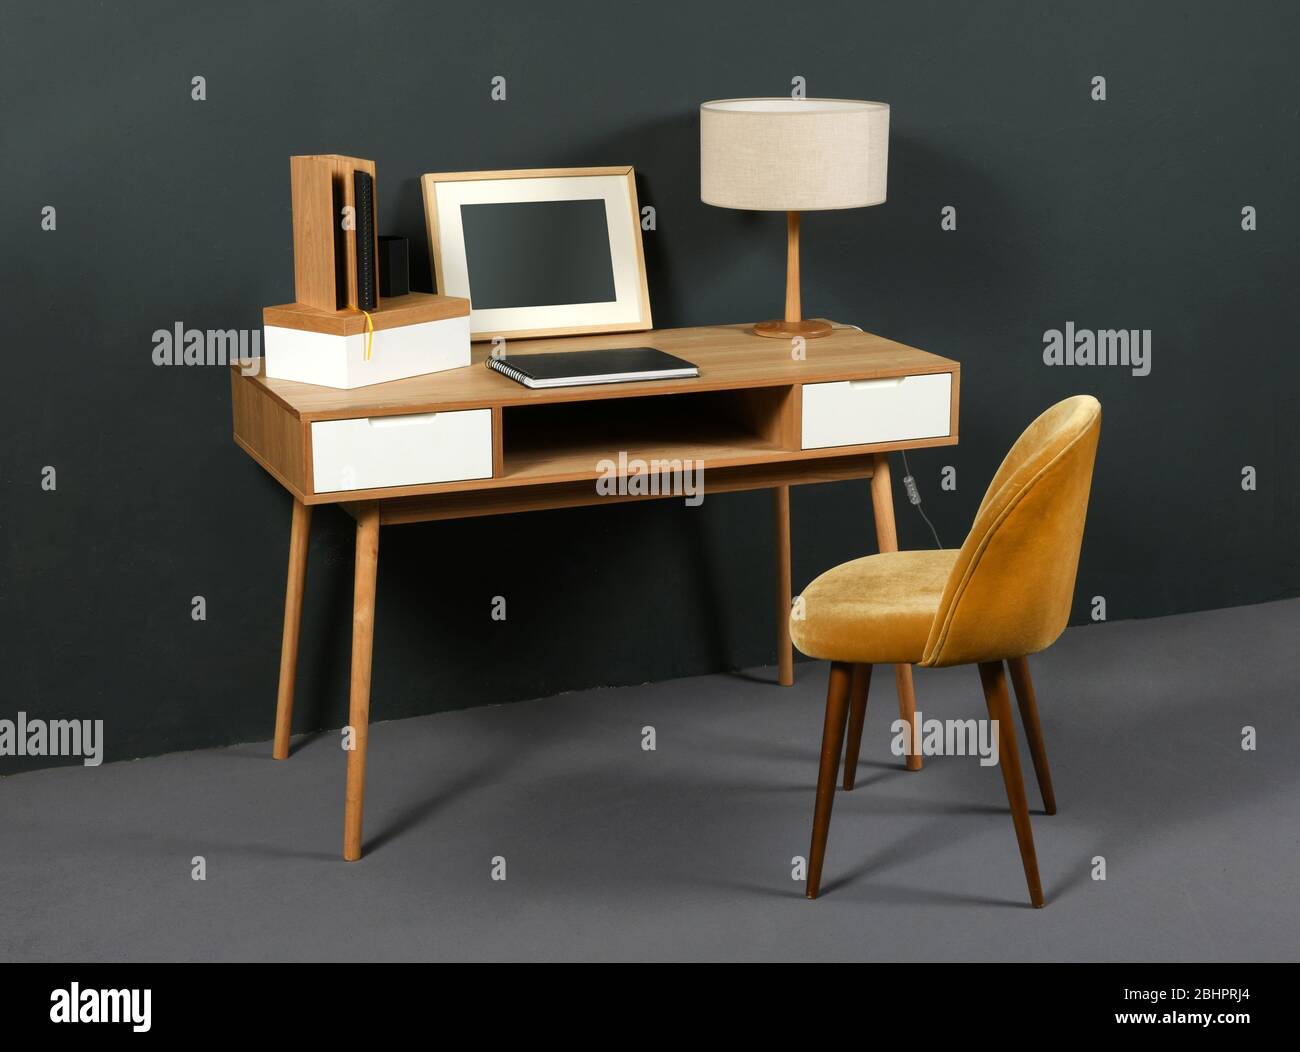 Alter Vintage-Holzschreibtisch mit Retro-Tischlampe, Bilderrahmen und Sessel in einem Raum mit grauer Einrichtung Stockfoto